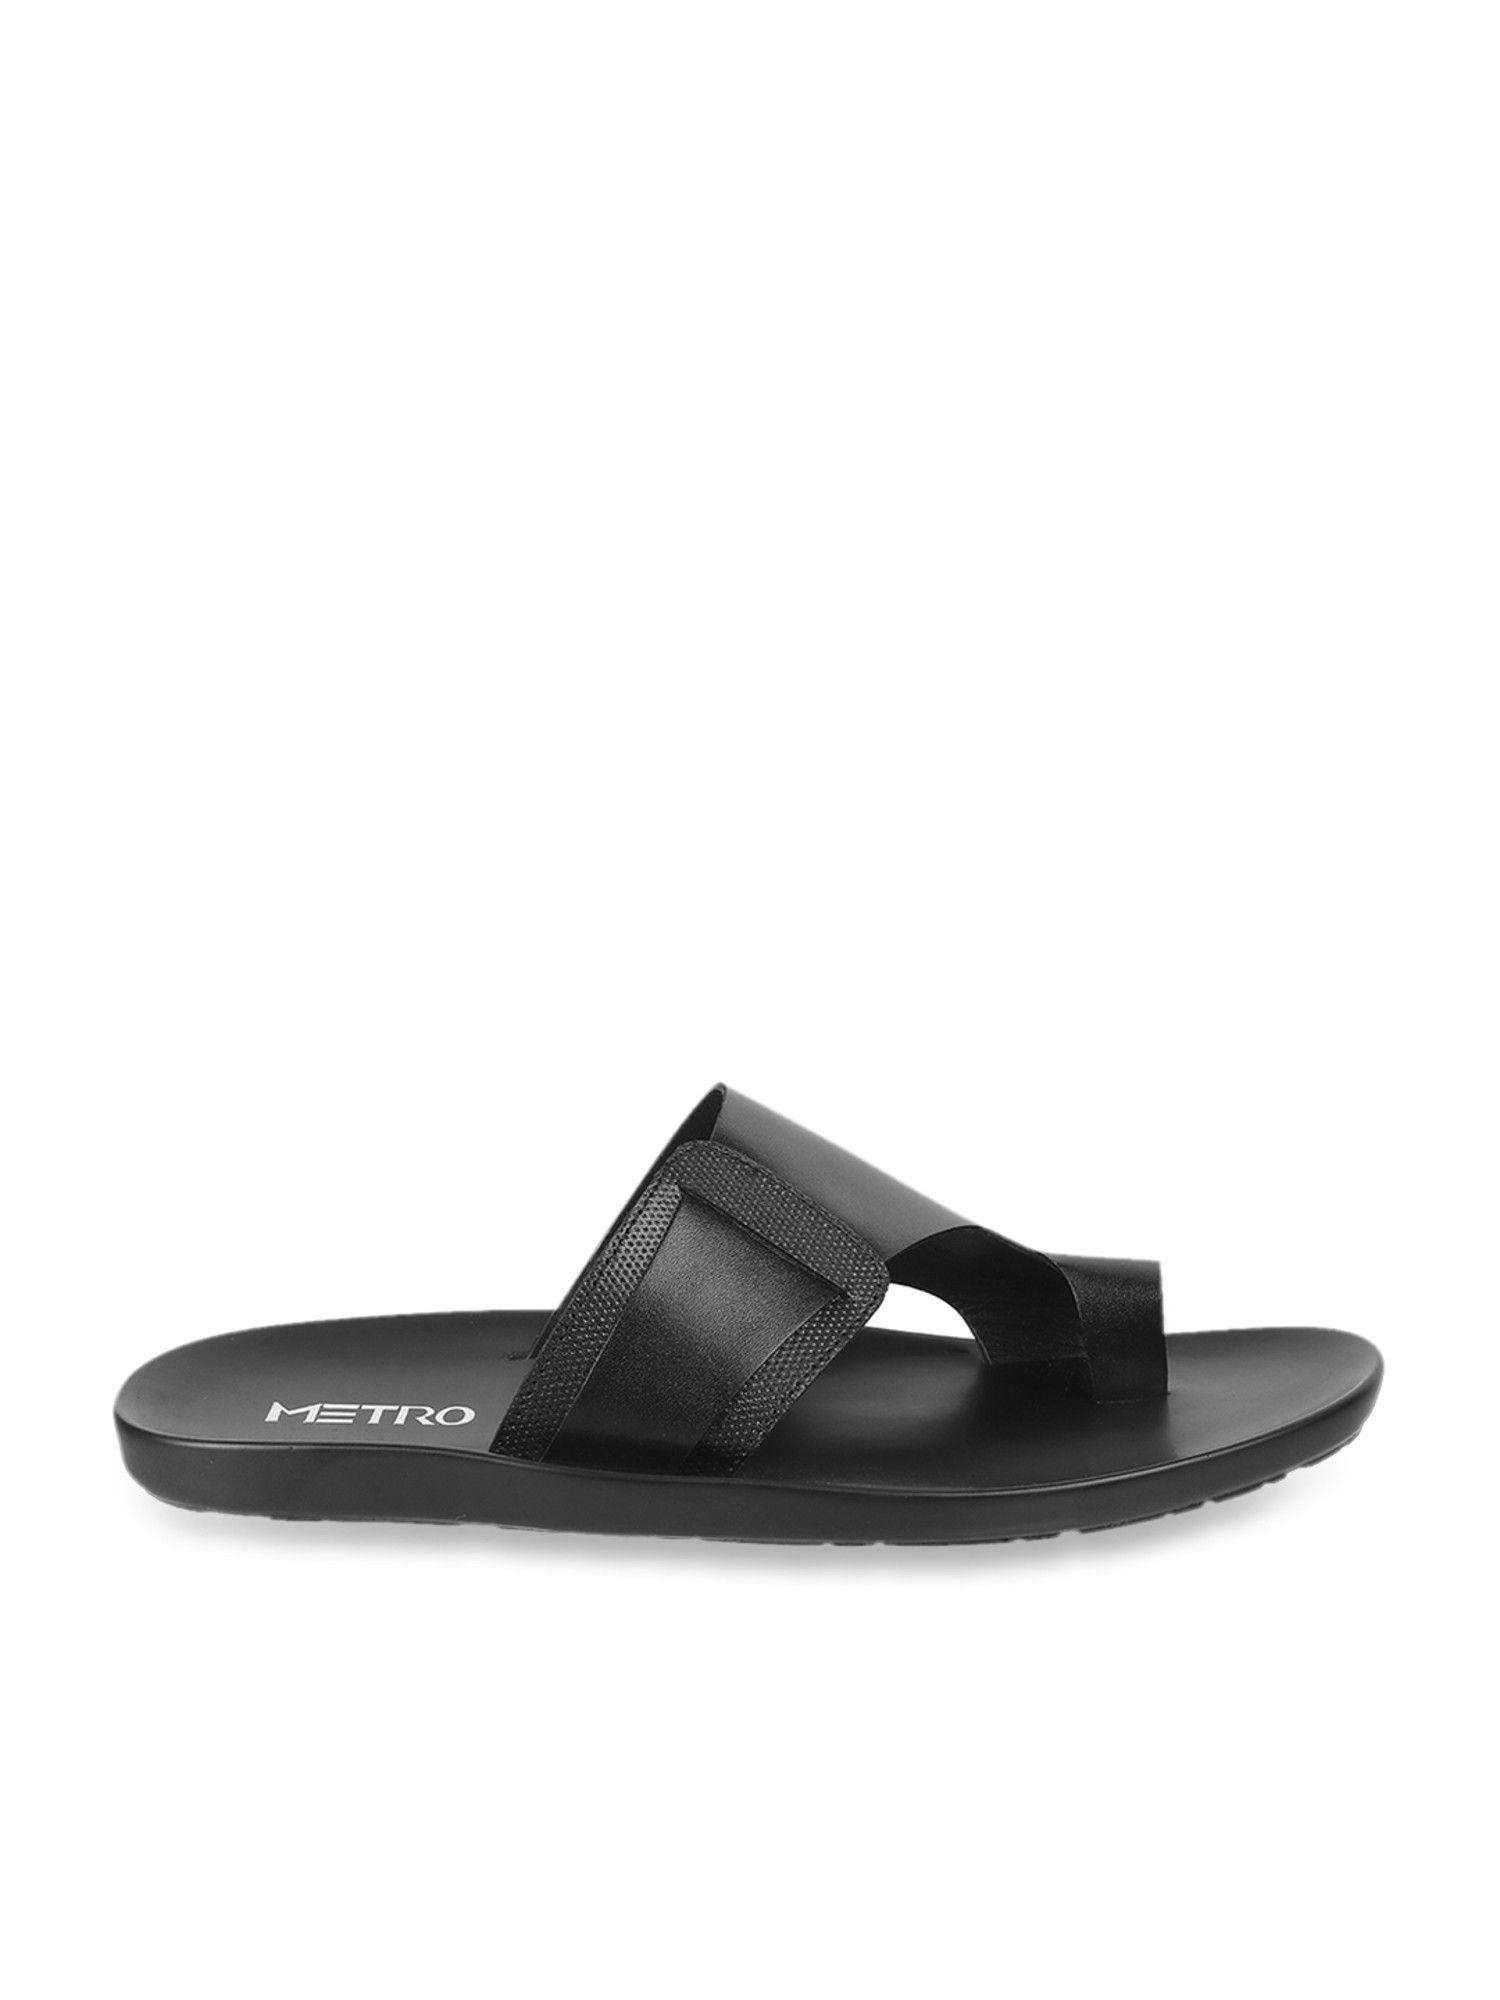 Buy White Sandals for Men by Metro Online | Ajio.com-sgquangbinhtourist.com.vn